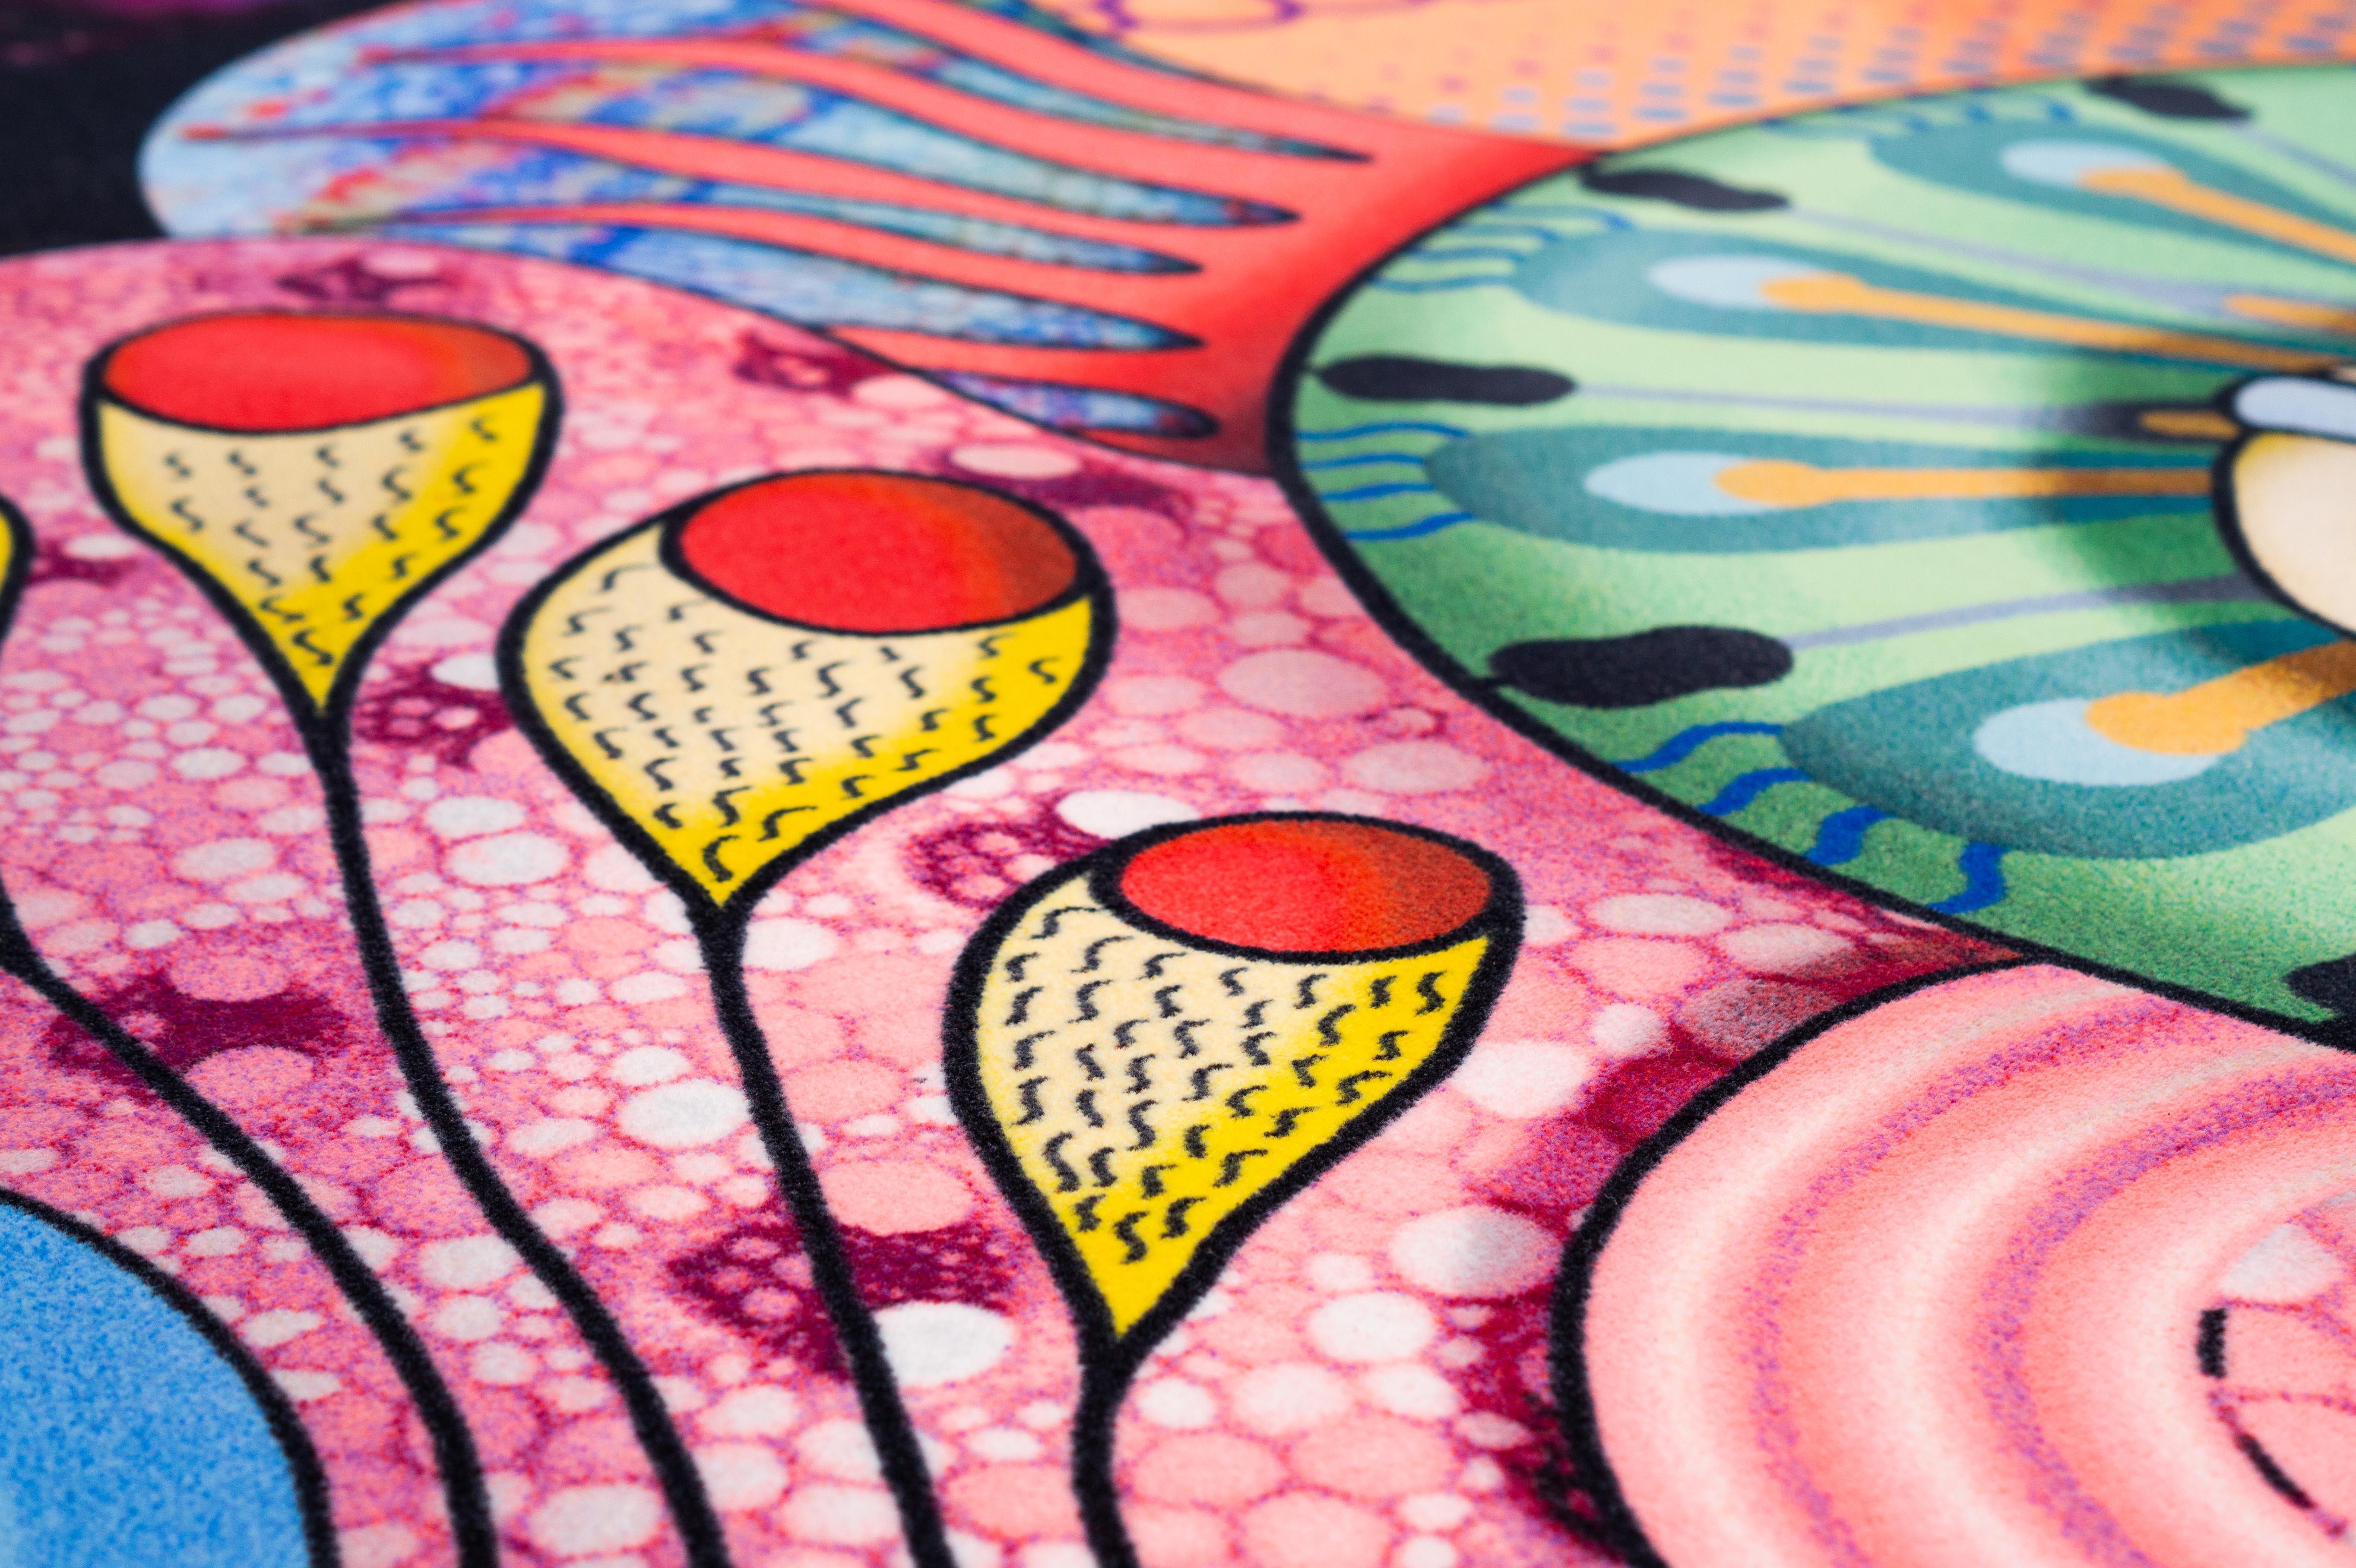 Moooi Kleiner drakonischer teppich aus weichem polyamidgarn von Elena Salmistraro

Elena Salmistraro Produktdesignerin und Künstlerin, geboren 1983, Elena Salmistraro lebt und arbeitet in Mailand. Nach ihrem Abschluss an der Polytechnischen